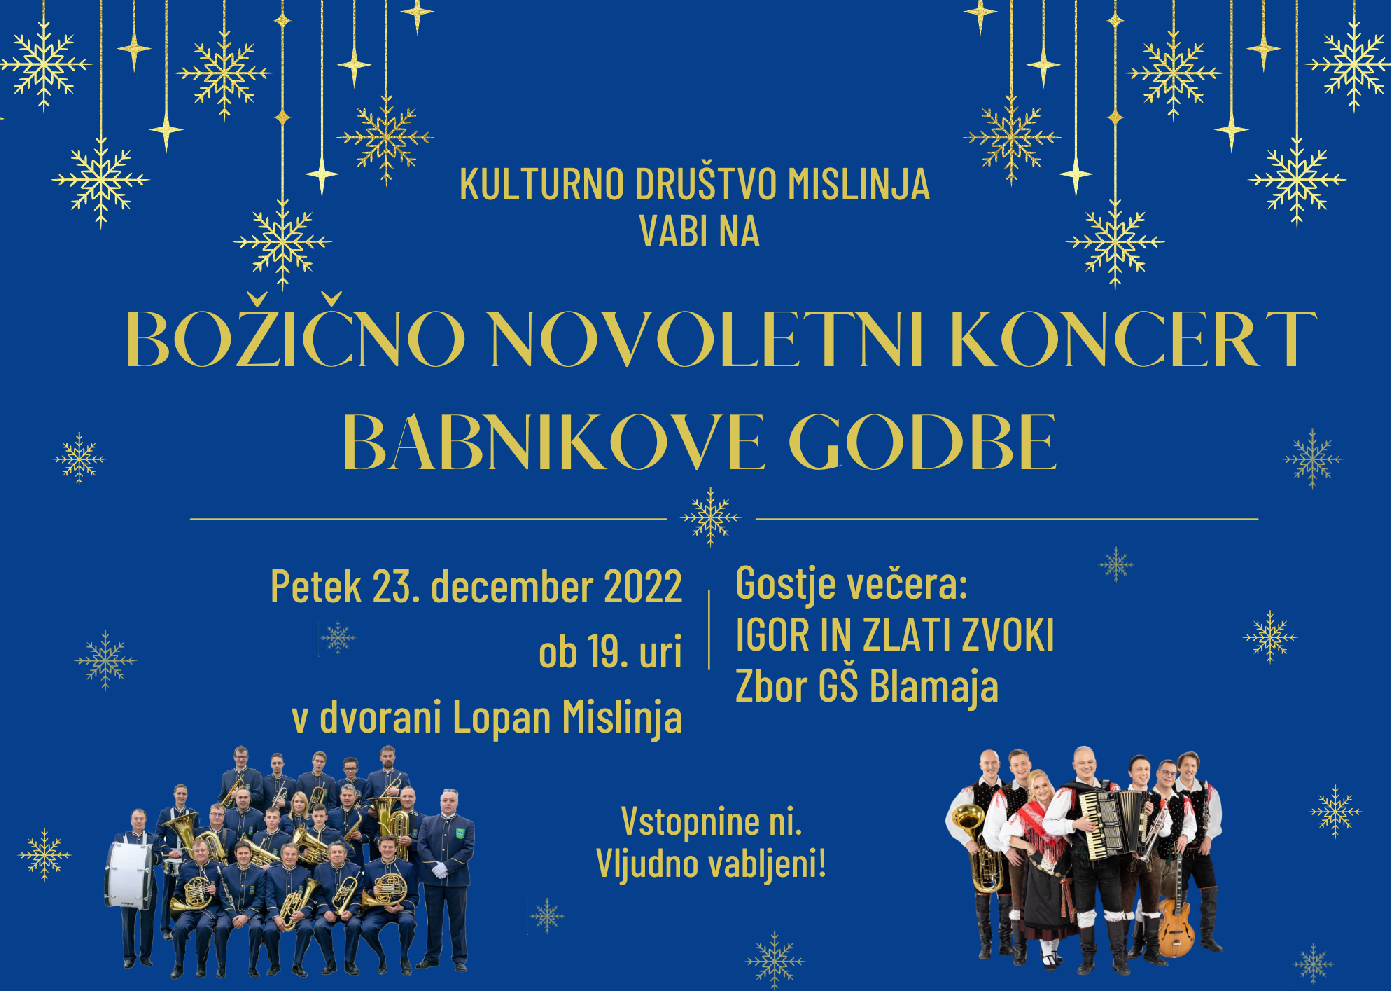 Božično novoletni koncert Babnikove godbe